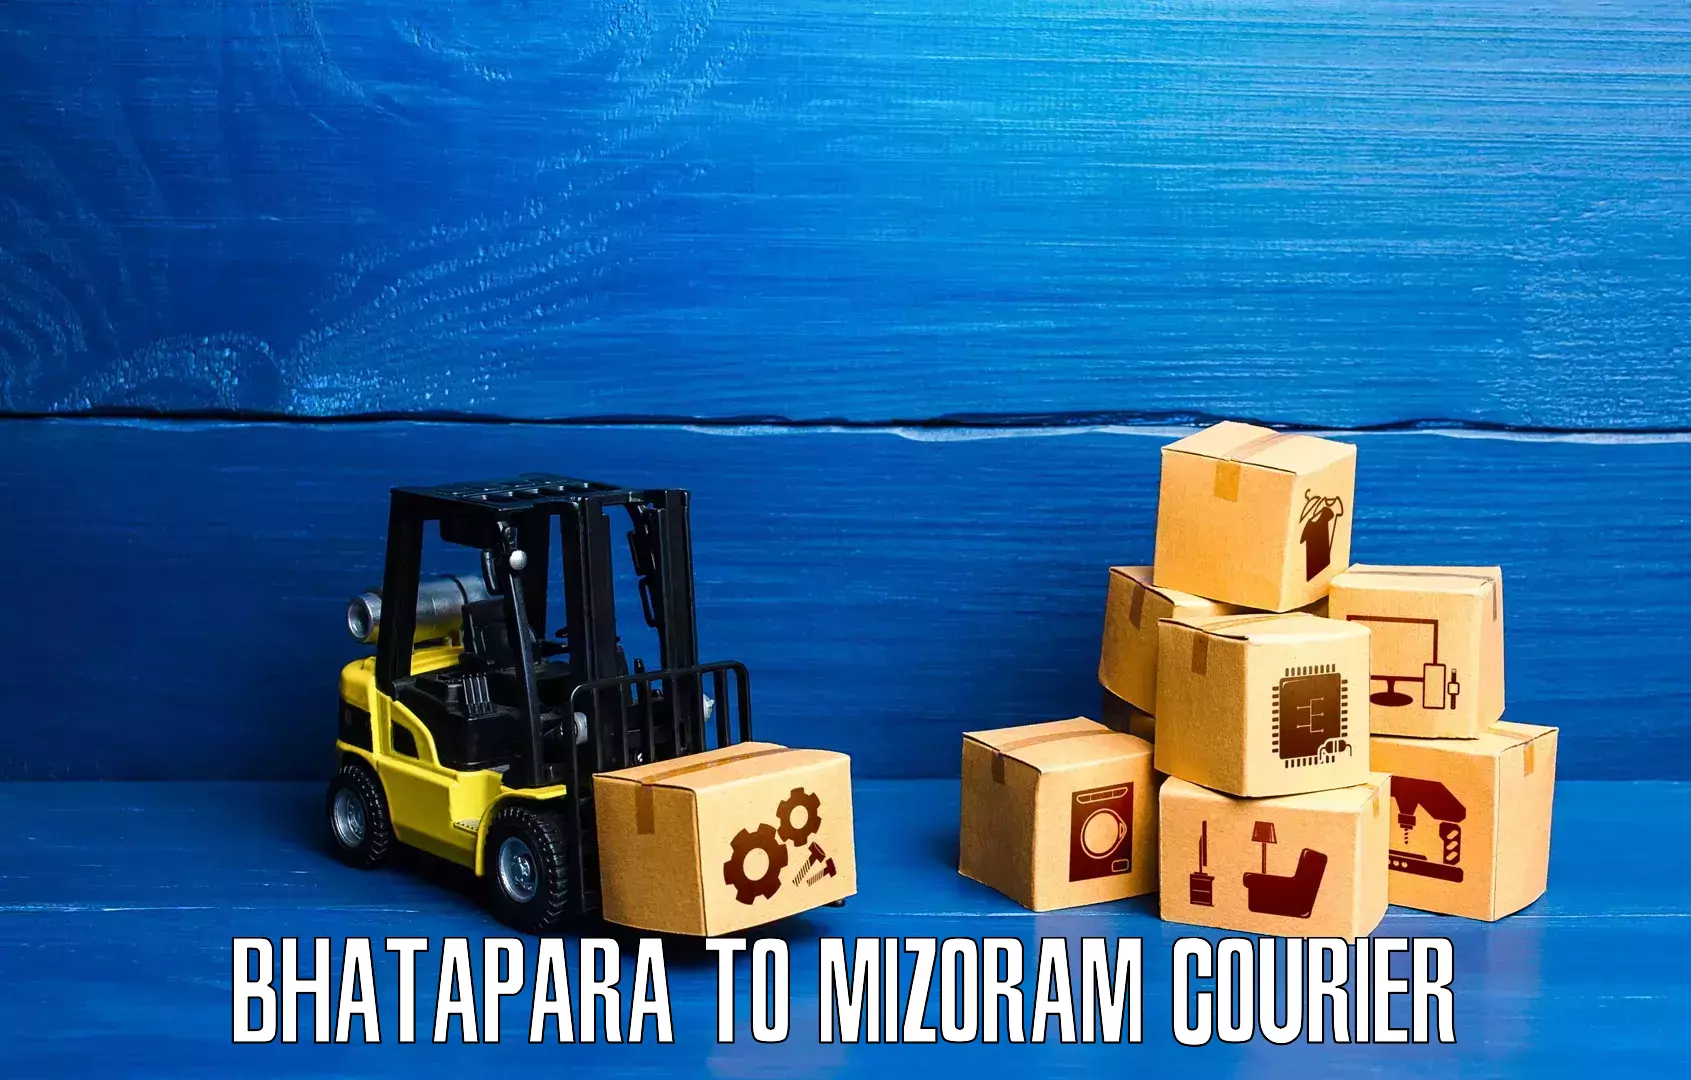 Courier service innovation Bhatapara to Siaha